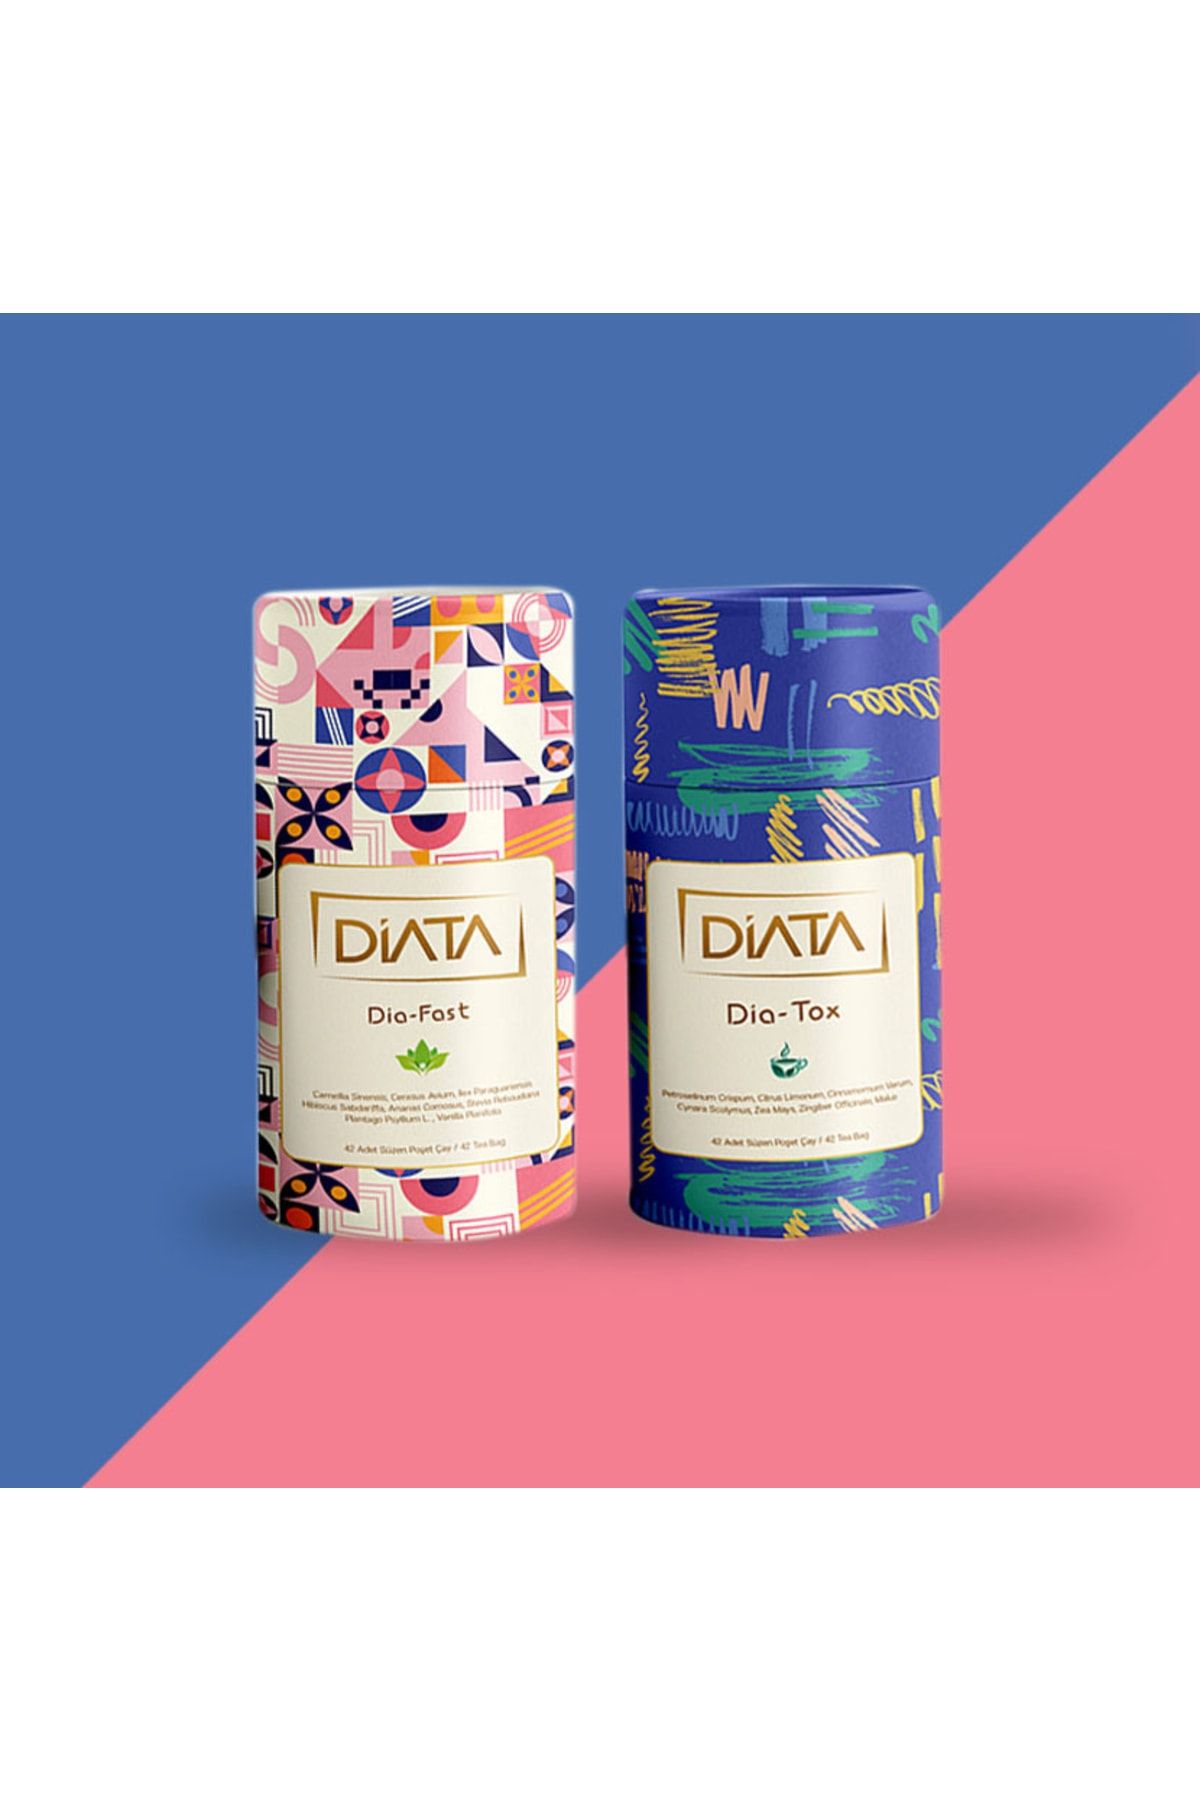 DİATA Tox + Dia-fast Metabolizma Hızlandırıcı, Yağ Yakıcı, Ödem Atıcı Detoks Çay Paketi